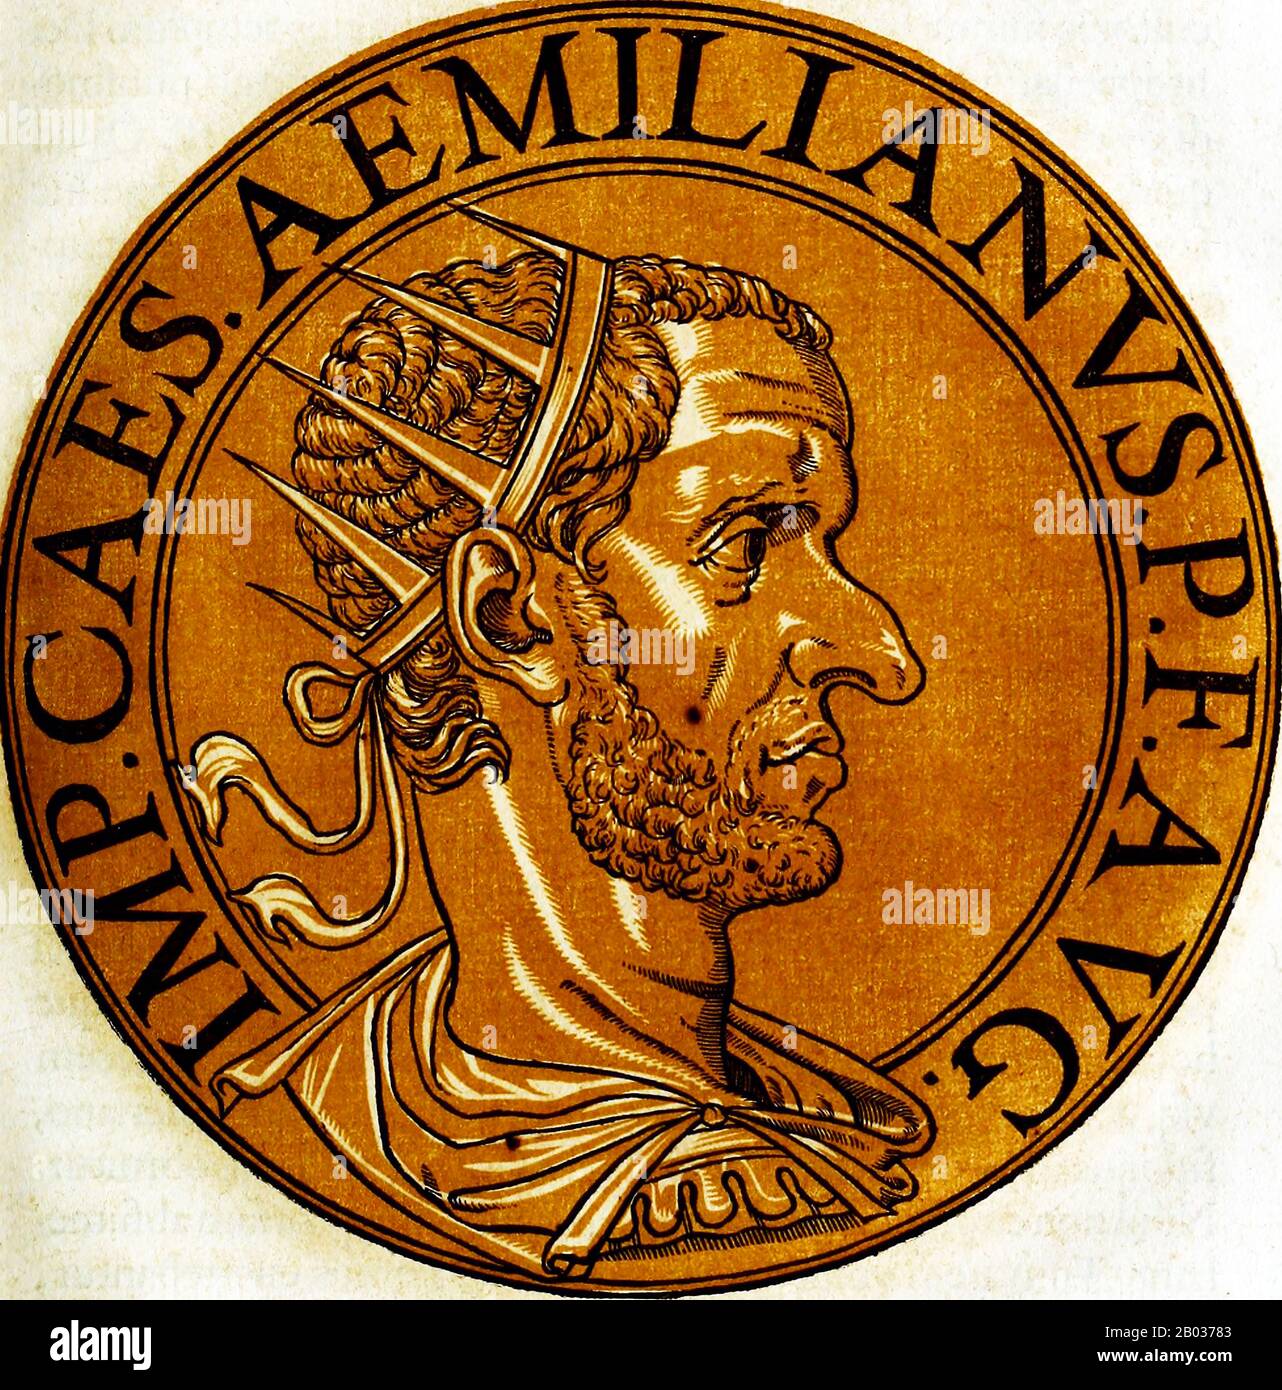 Aemilianus (207/213-253), également connu sous le nom d'Aemilian, était commandant et gouverneur des provinces romaines dans les Balkans. Pendant le règne de Trebonianus Gallus et de son fils Volusianus, Aemilian a combattu une invasion urgente de Goth dans les Balkans, et a été proclamé empereur par ses propres soldats pour ses victoires. Il a immédiatement marché vers Rome pour usurp Gallus et Volusianus, les battant en bataille et montant vers le trône impérial Cependant, moins de trois mois dans son règne, un rival requérant au trône, Valerian, a marché vers Rome. Les soldats d'Aemilian ne veulent pas combattre une guerre civile Banque D'Images